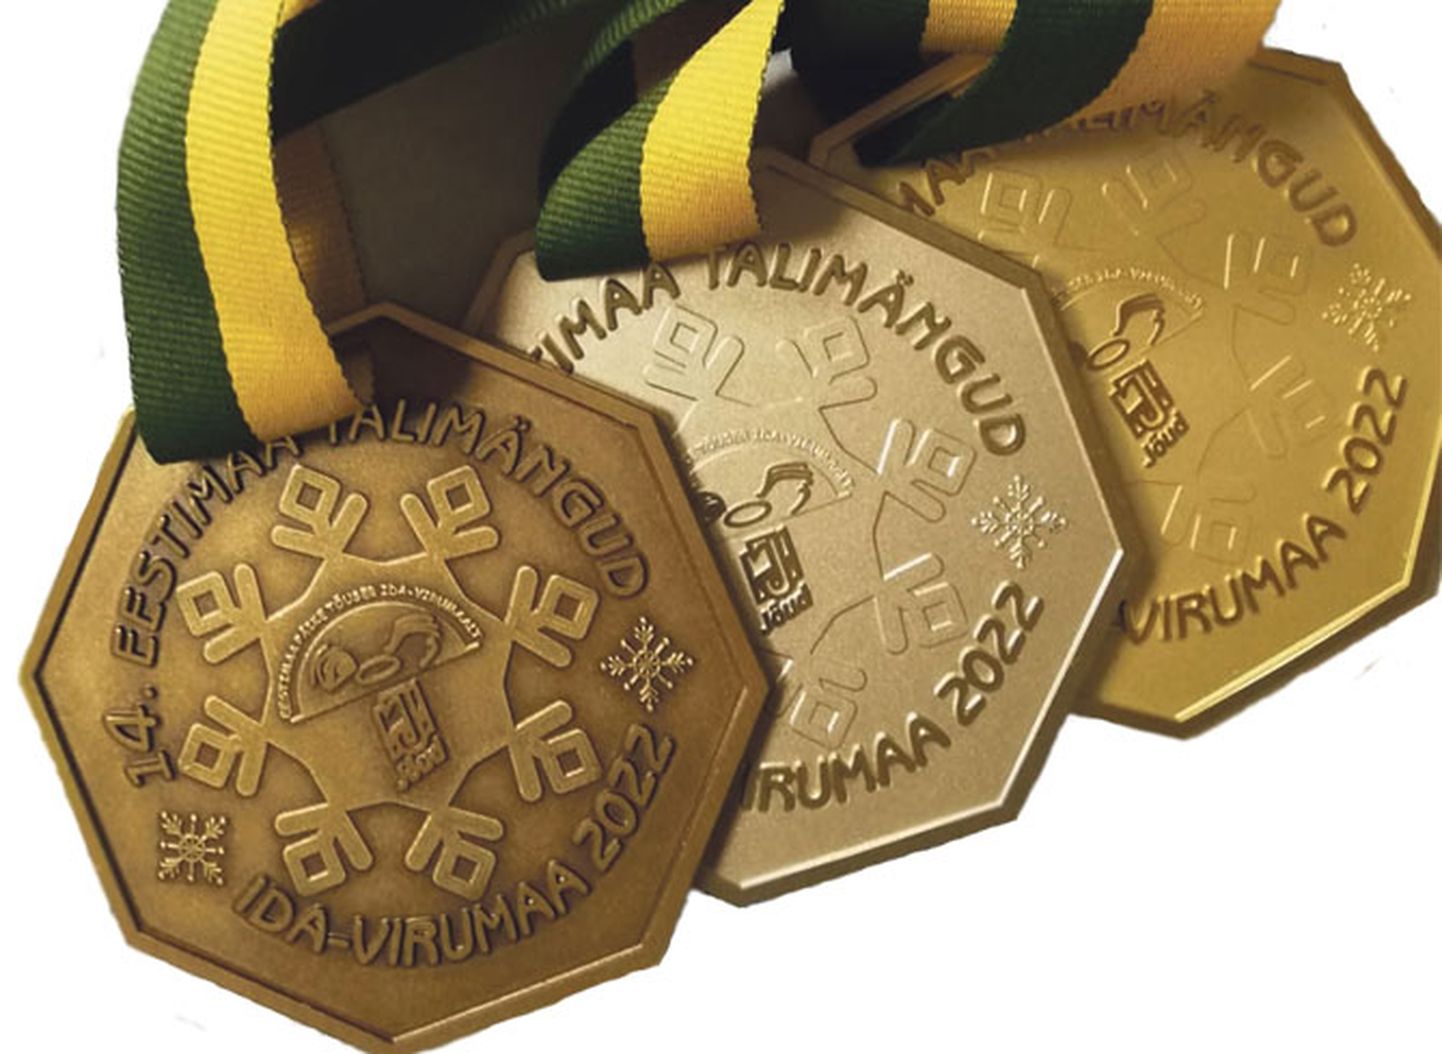 Sellised medalid saavad kaela Eestimaa talimängude parimad.